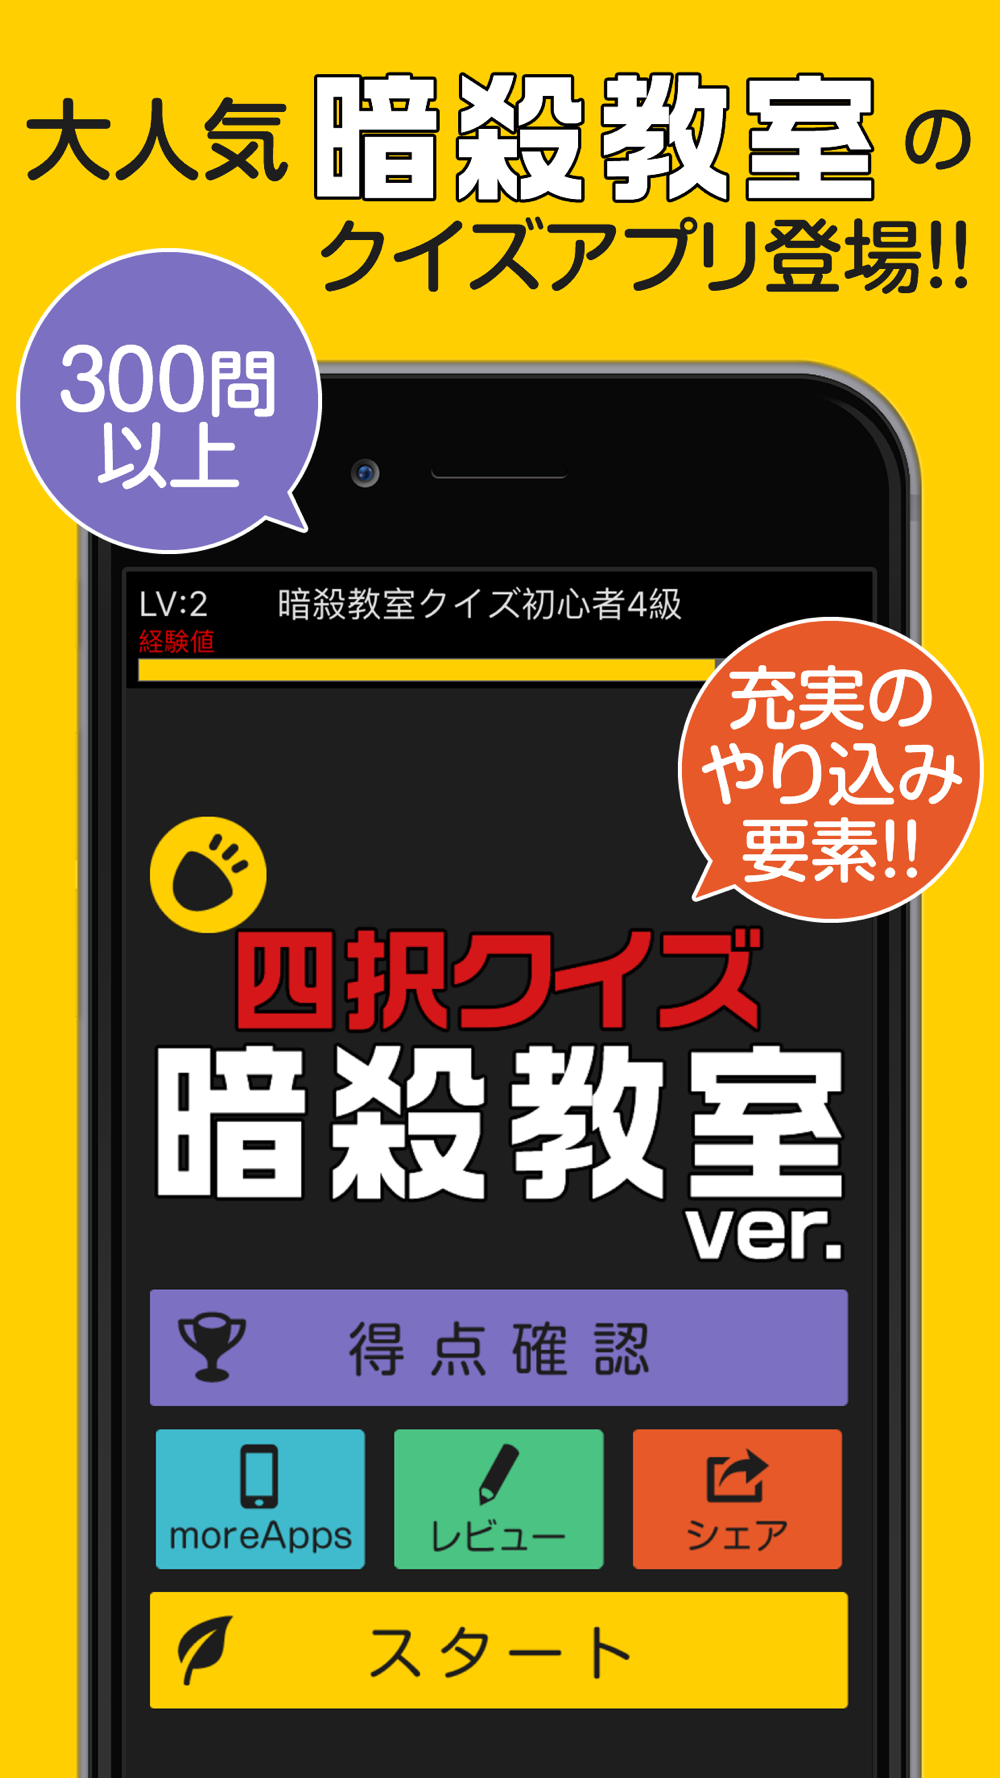 暗殺教室ver 四択クイズ Free Download App For Iphone Steprimo Com